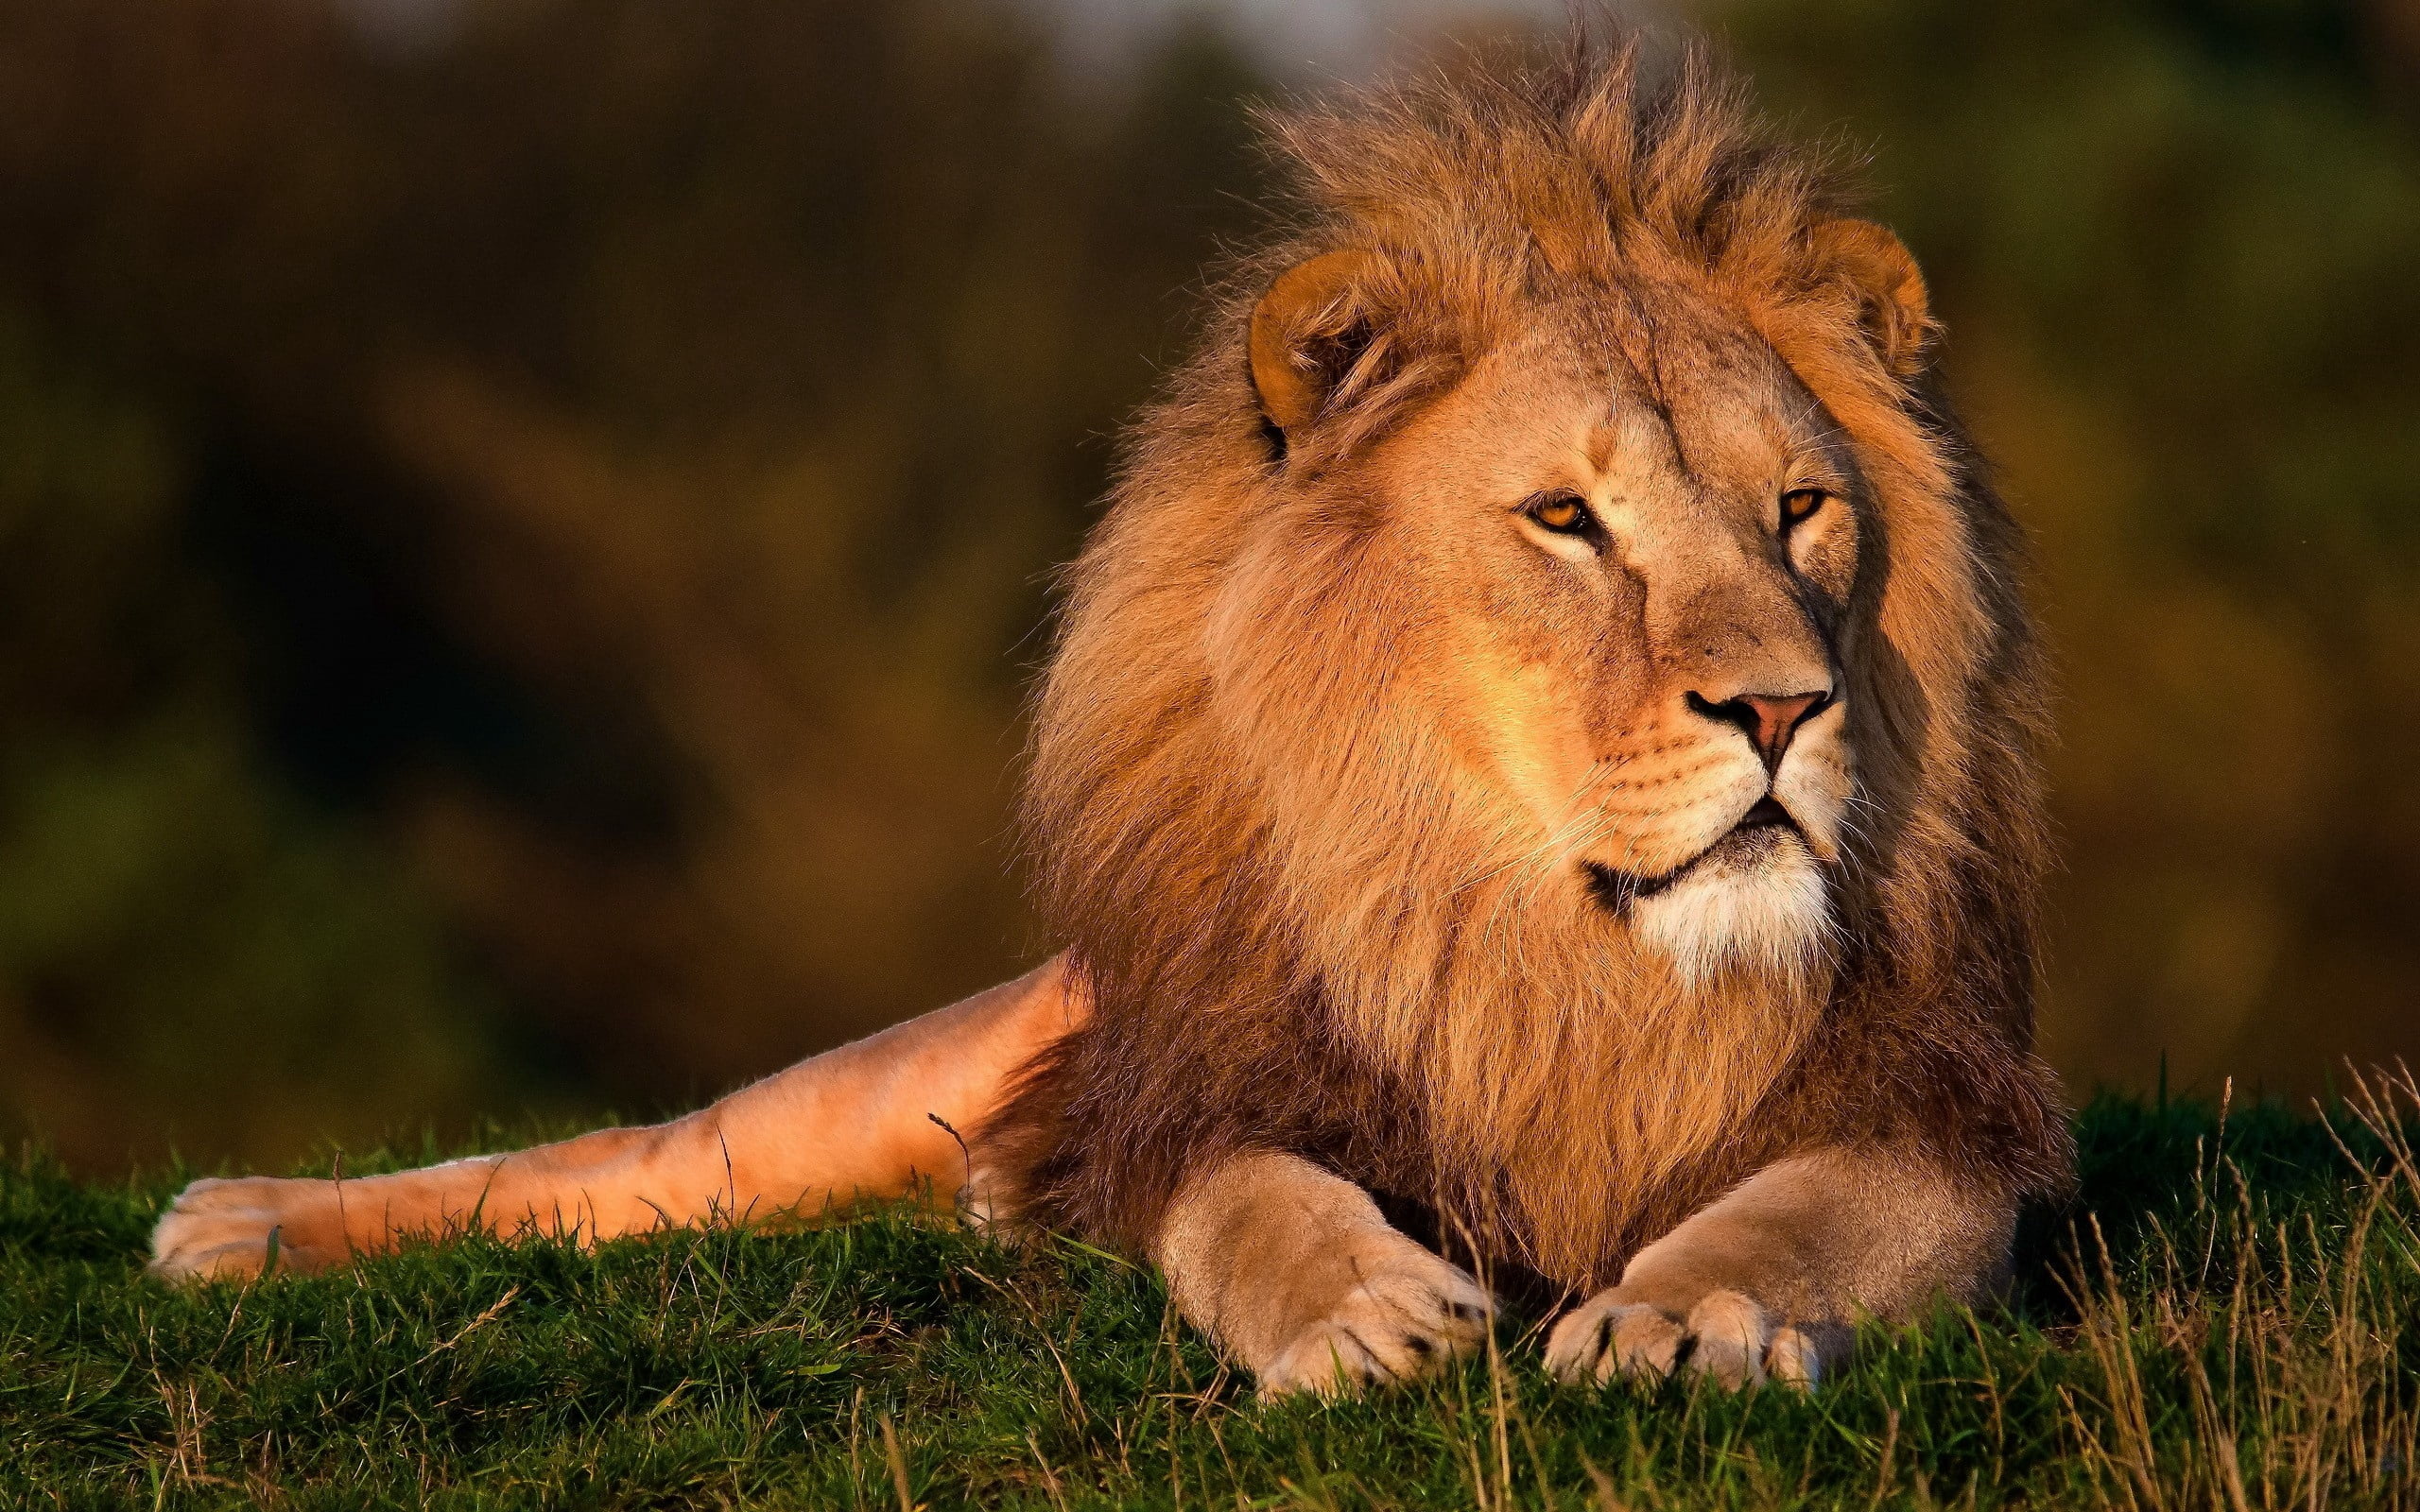 brown lion, grass, king animals, mane, lion - Feline, wildlife